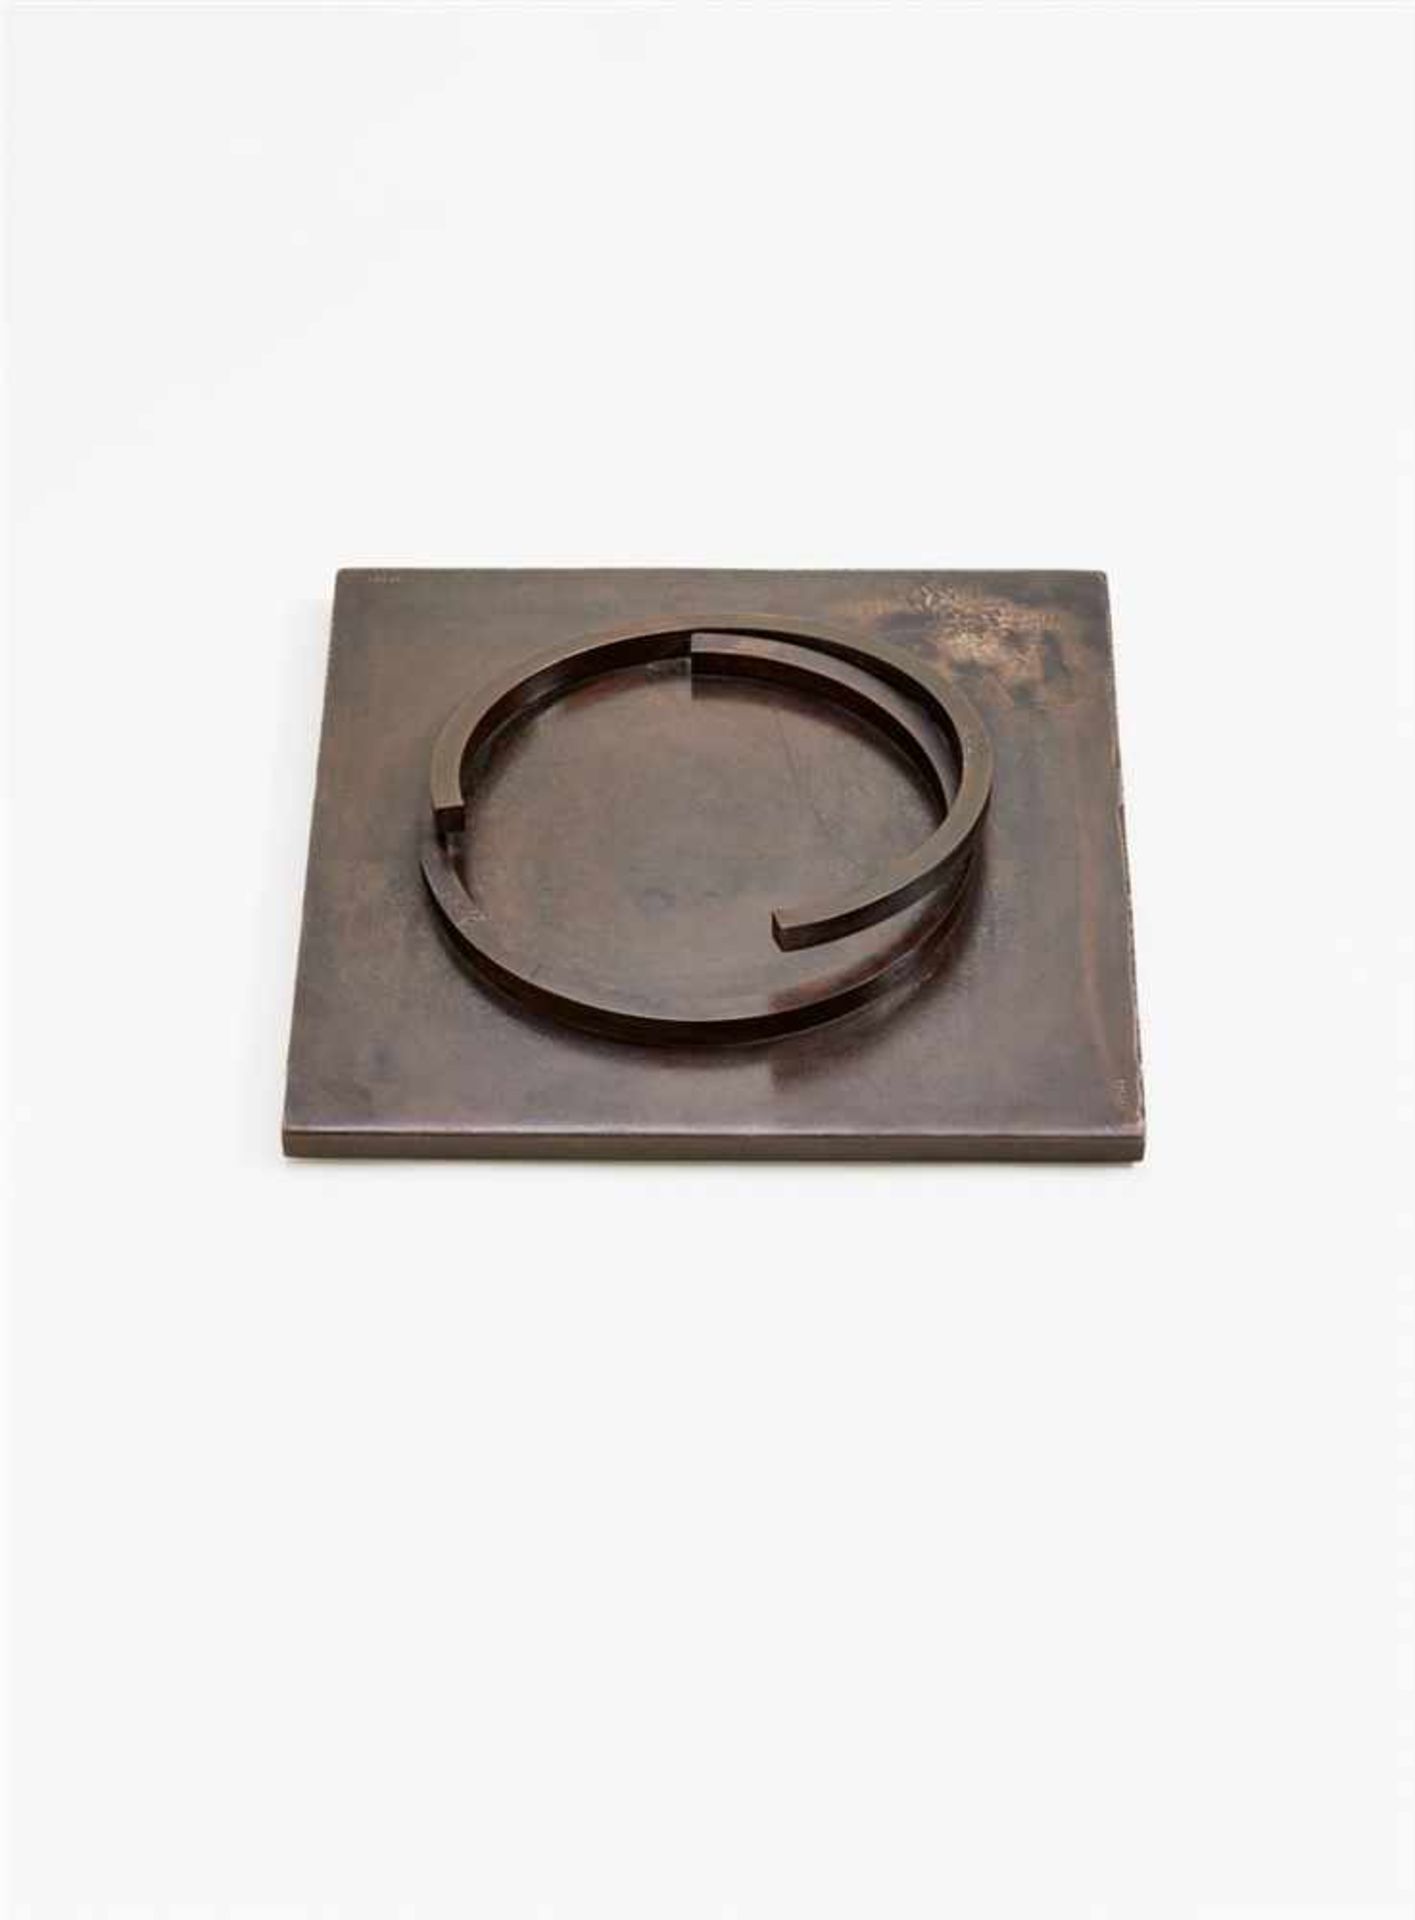 Bernar Venet271° Bronze mit brauner Patina. 8 x 45 x 45 cm. Zweifach gestempelt signiert und